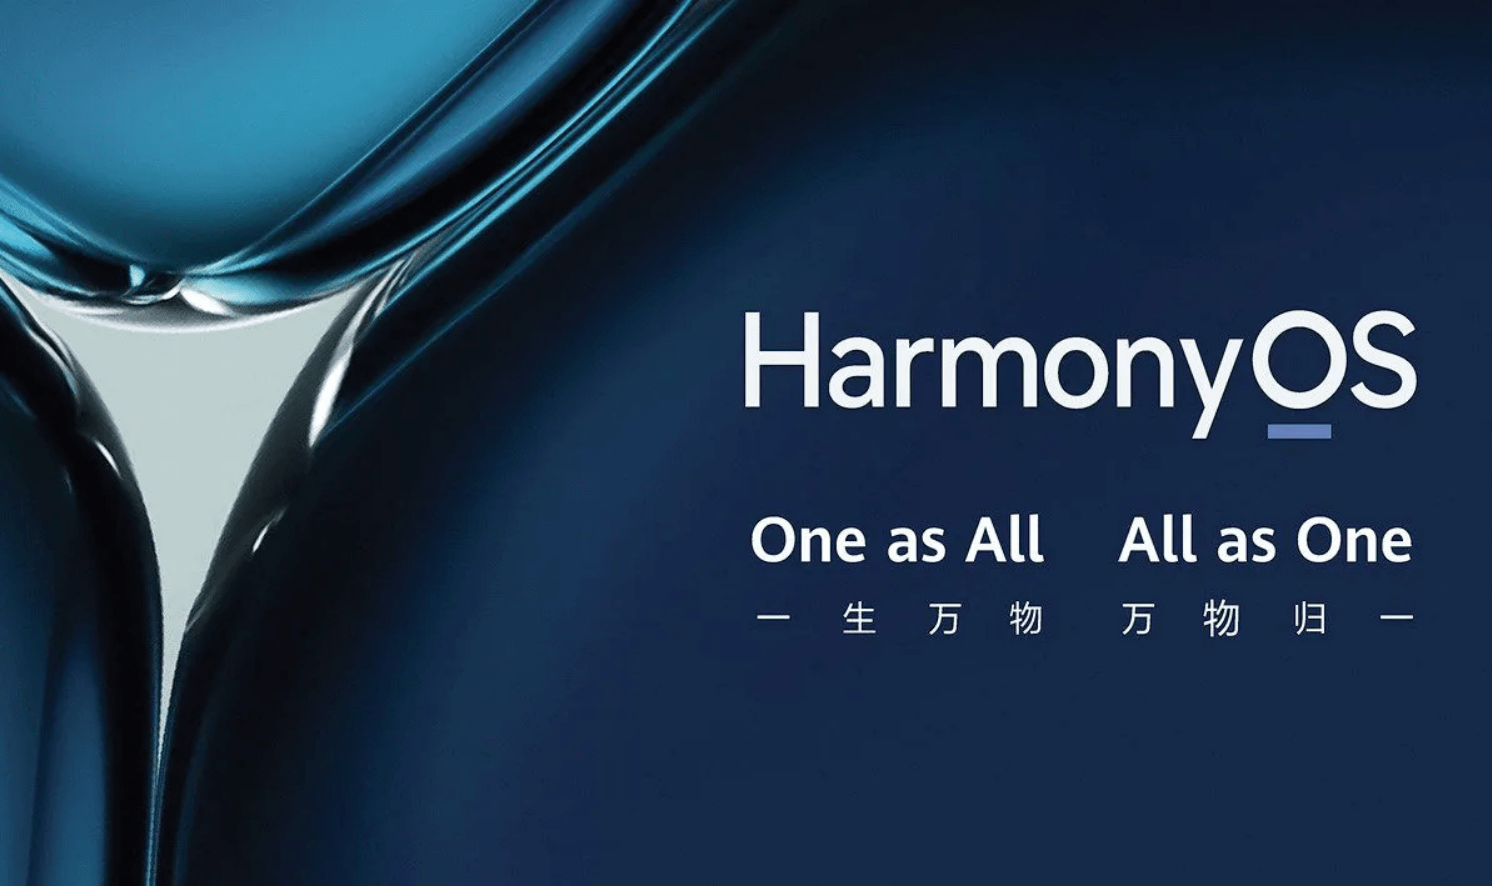 HarmonyOS là nền tảng được Huawei đầu tư lớn. Ảnh: Huawei.